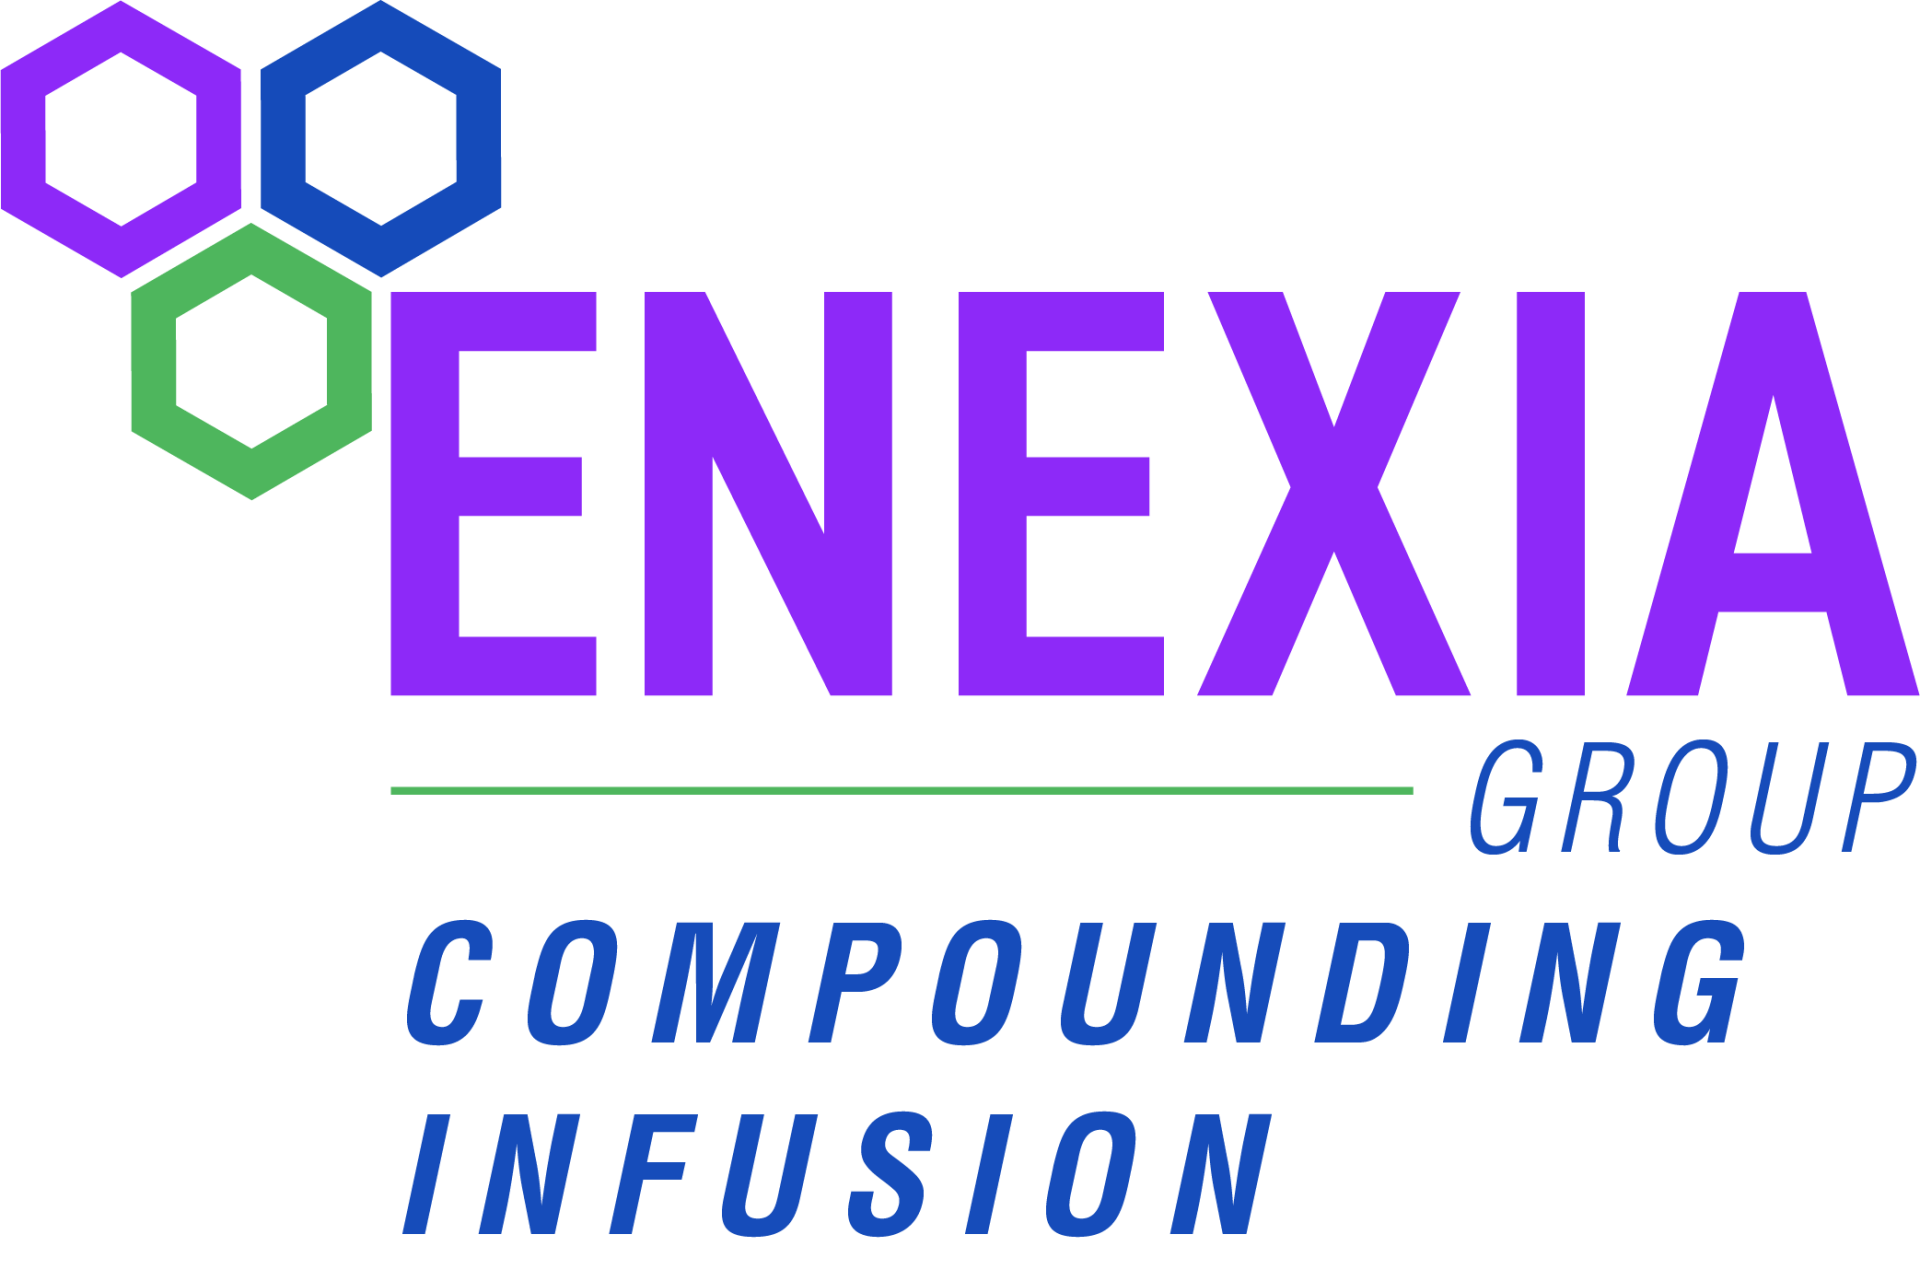 Enexia Pharmacy